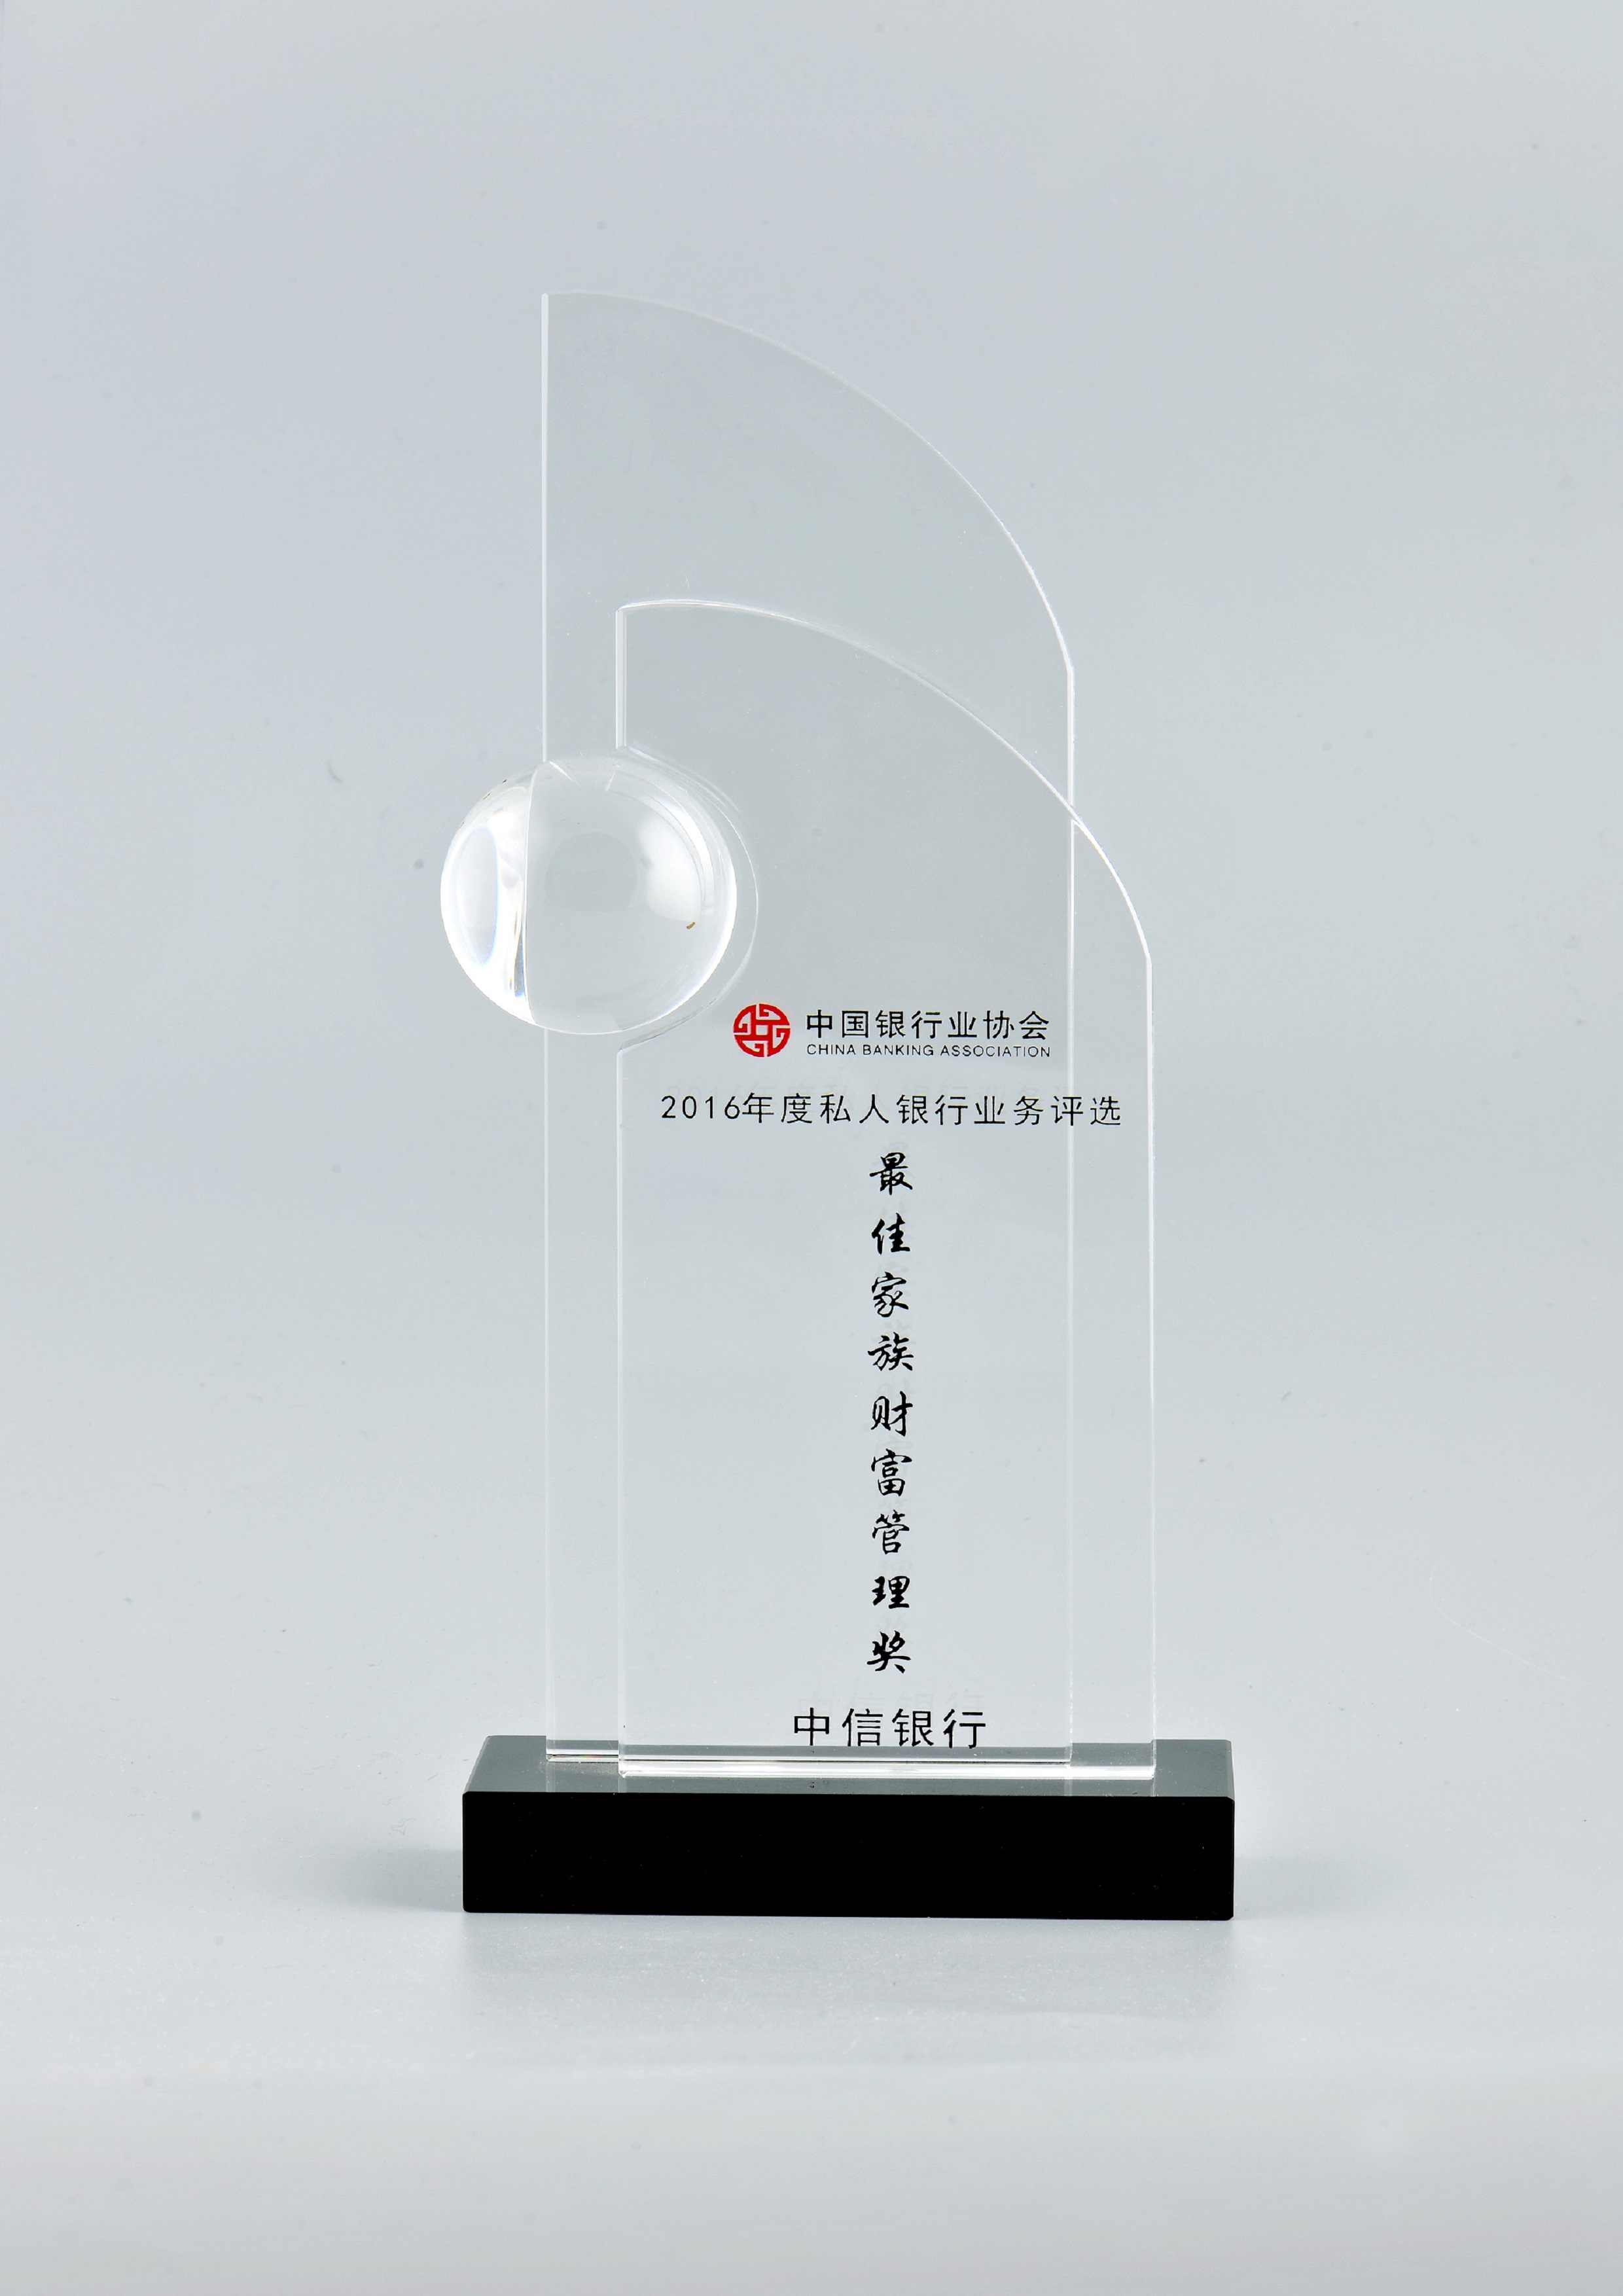 2中国最佳家族财富管理奖2016年度.JPG